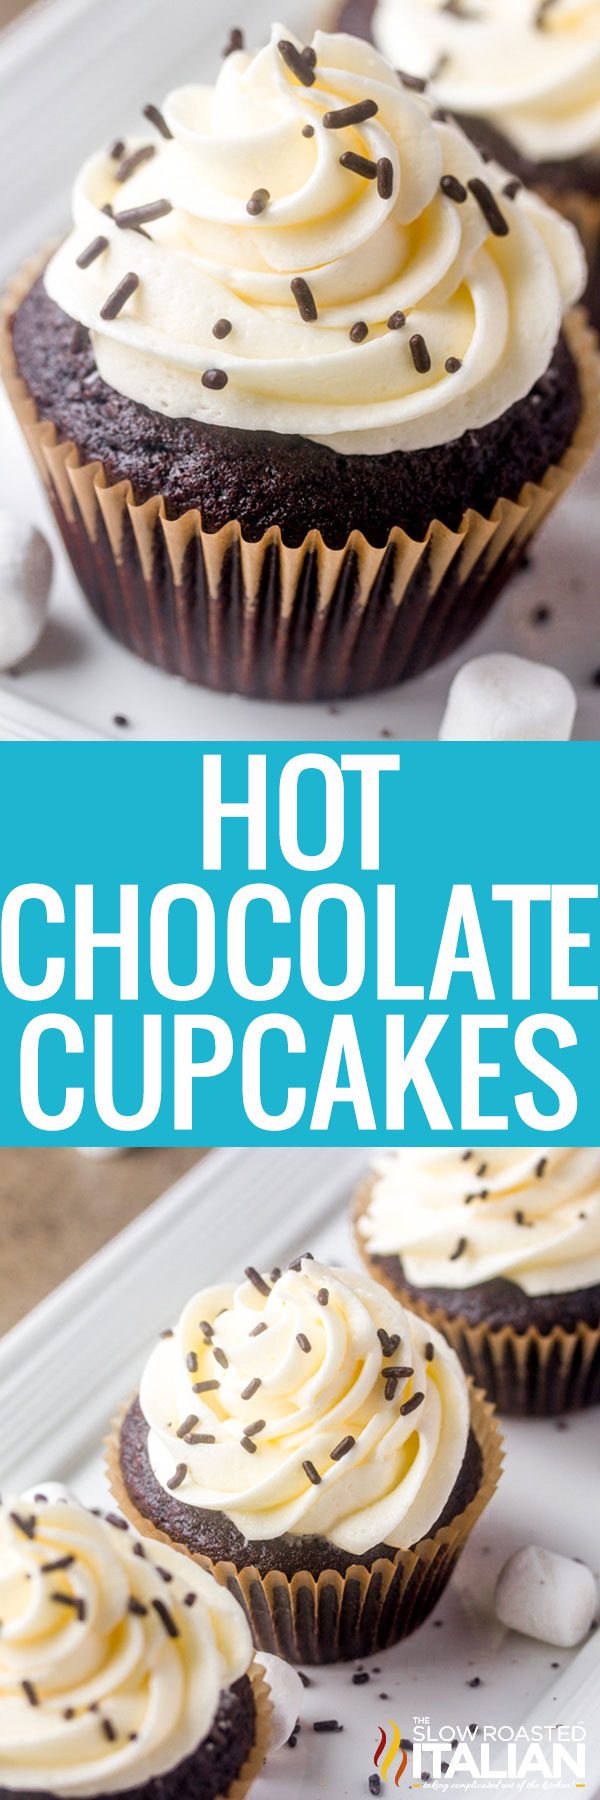 hot chocolate cupcakes -pin